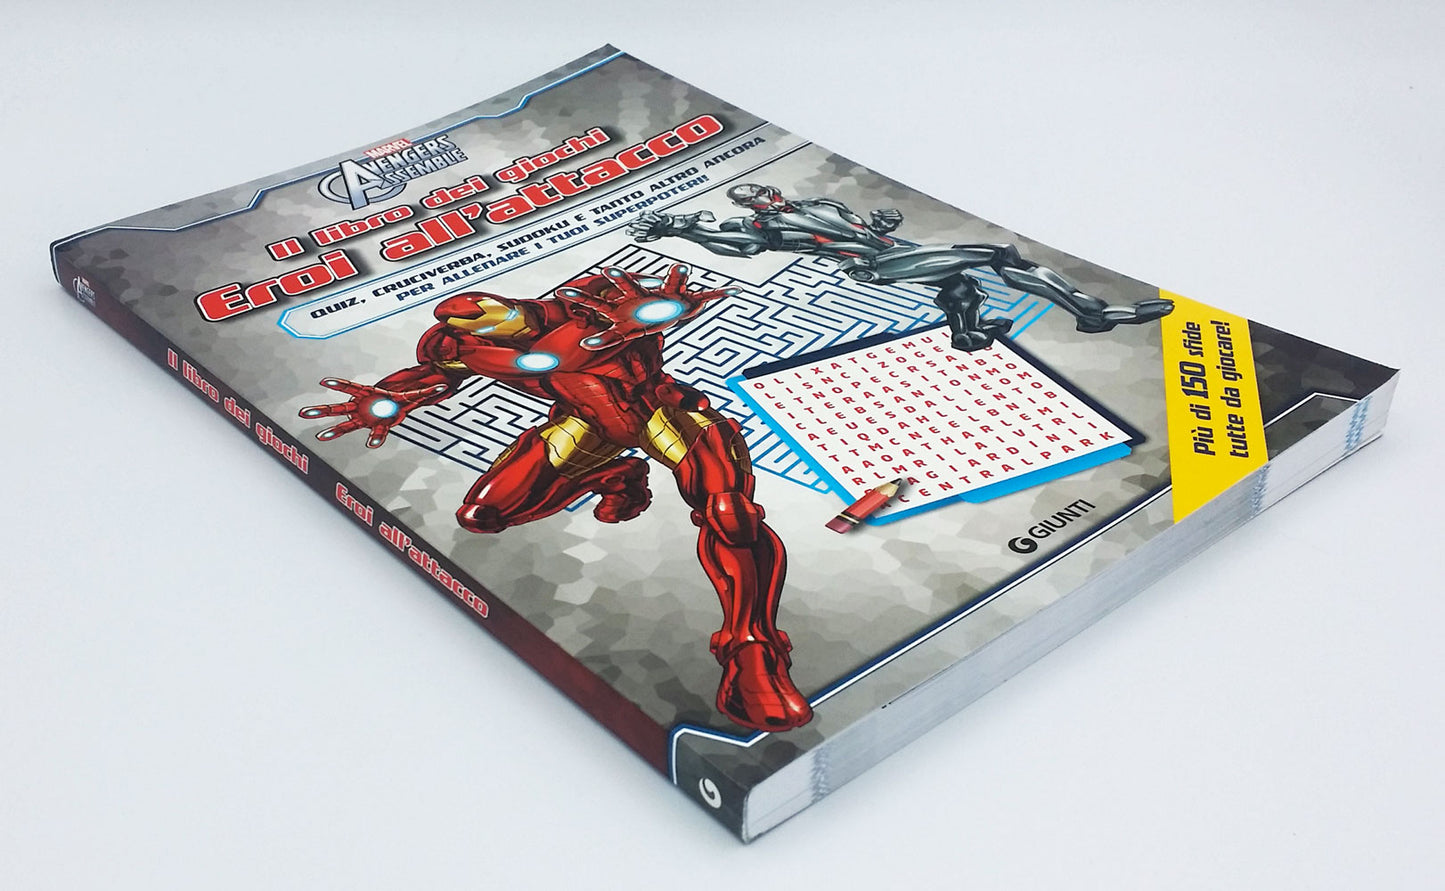 Il libro dei giochi - Avengers Assemble. Eroi all'attacco::Più di 150 sfide tutte da giocare!